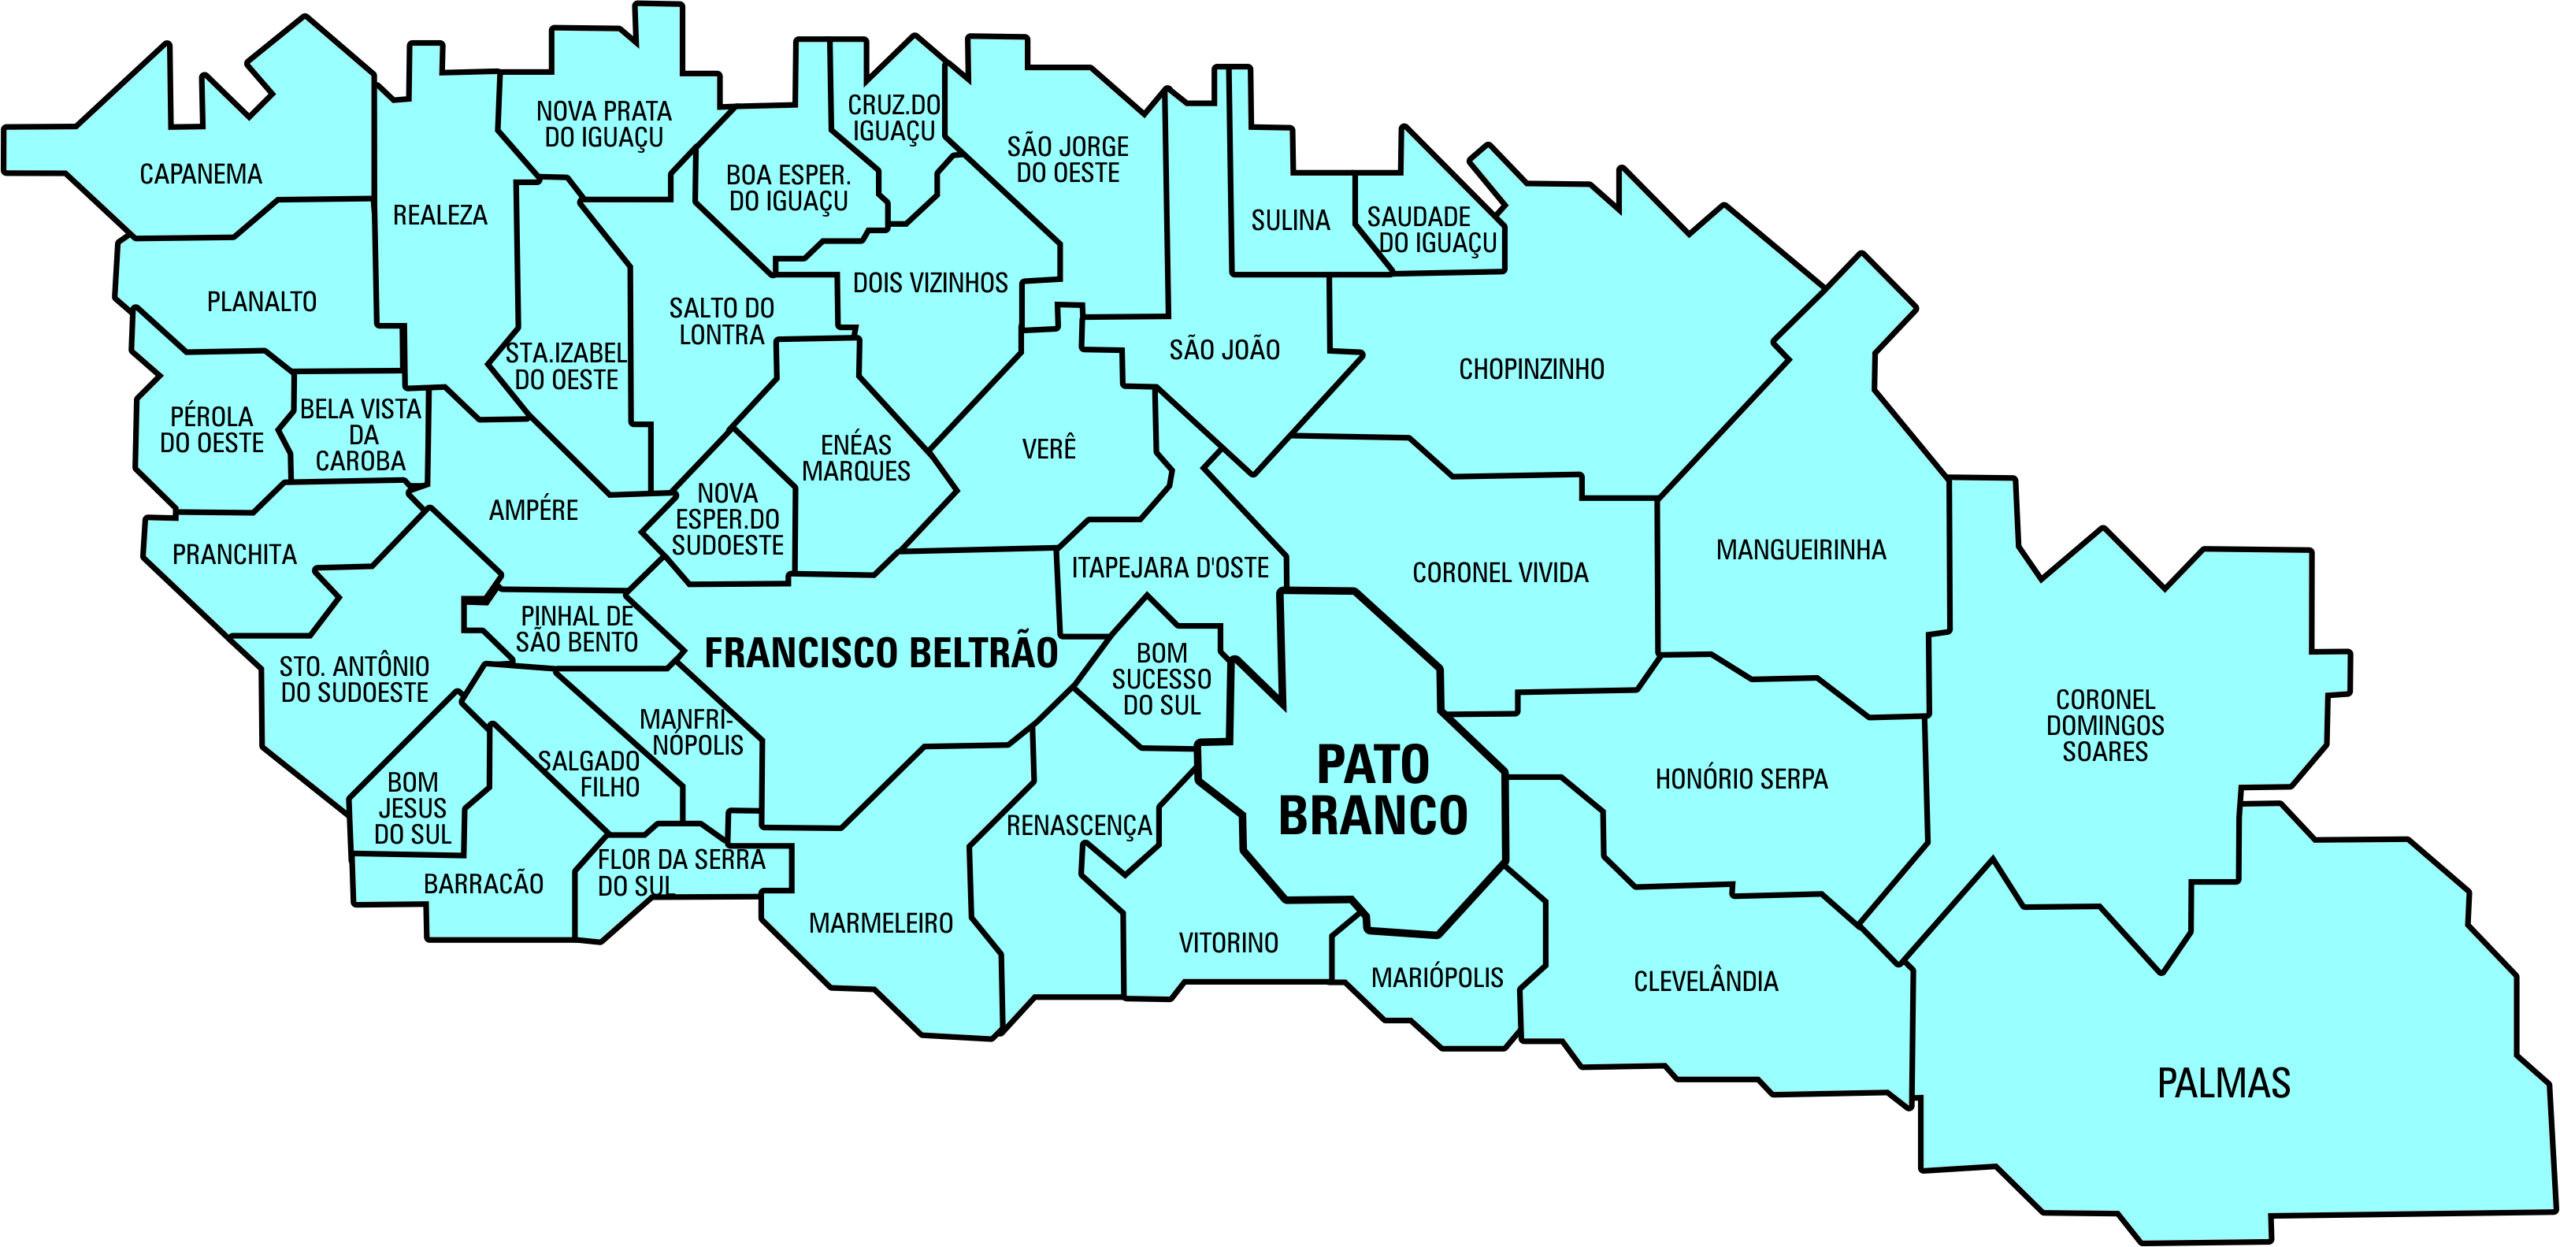 Ratinho recebeu 174.909 votos no Sudoeste - Diário do Sudoeste